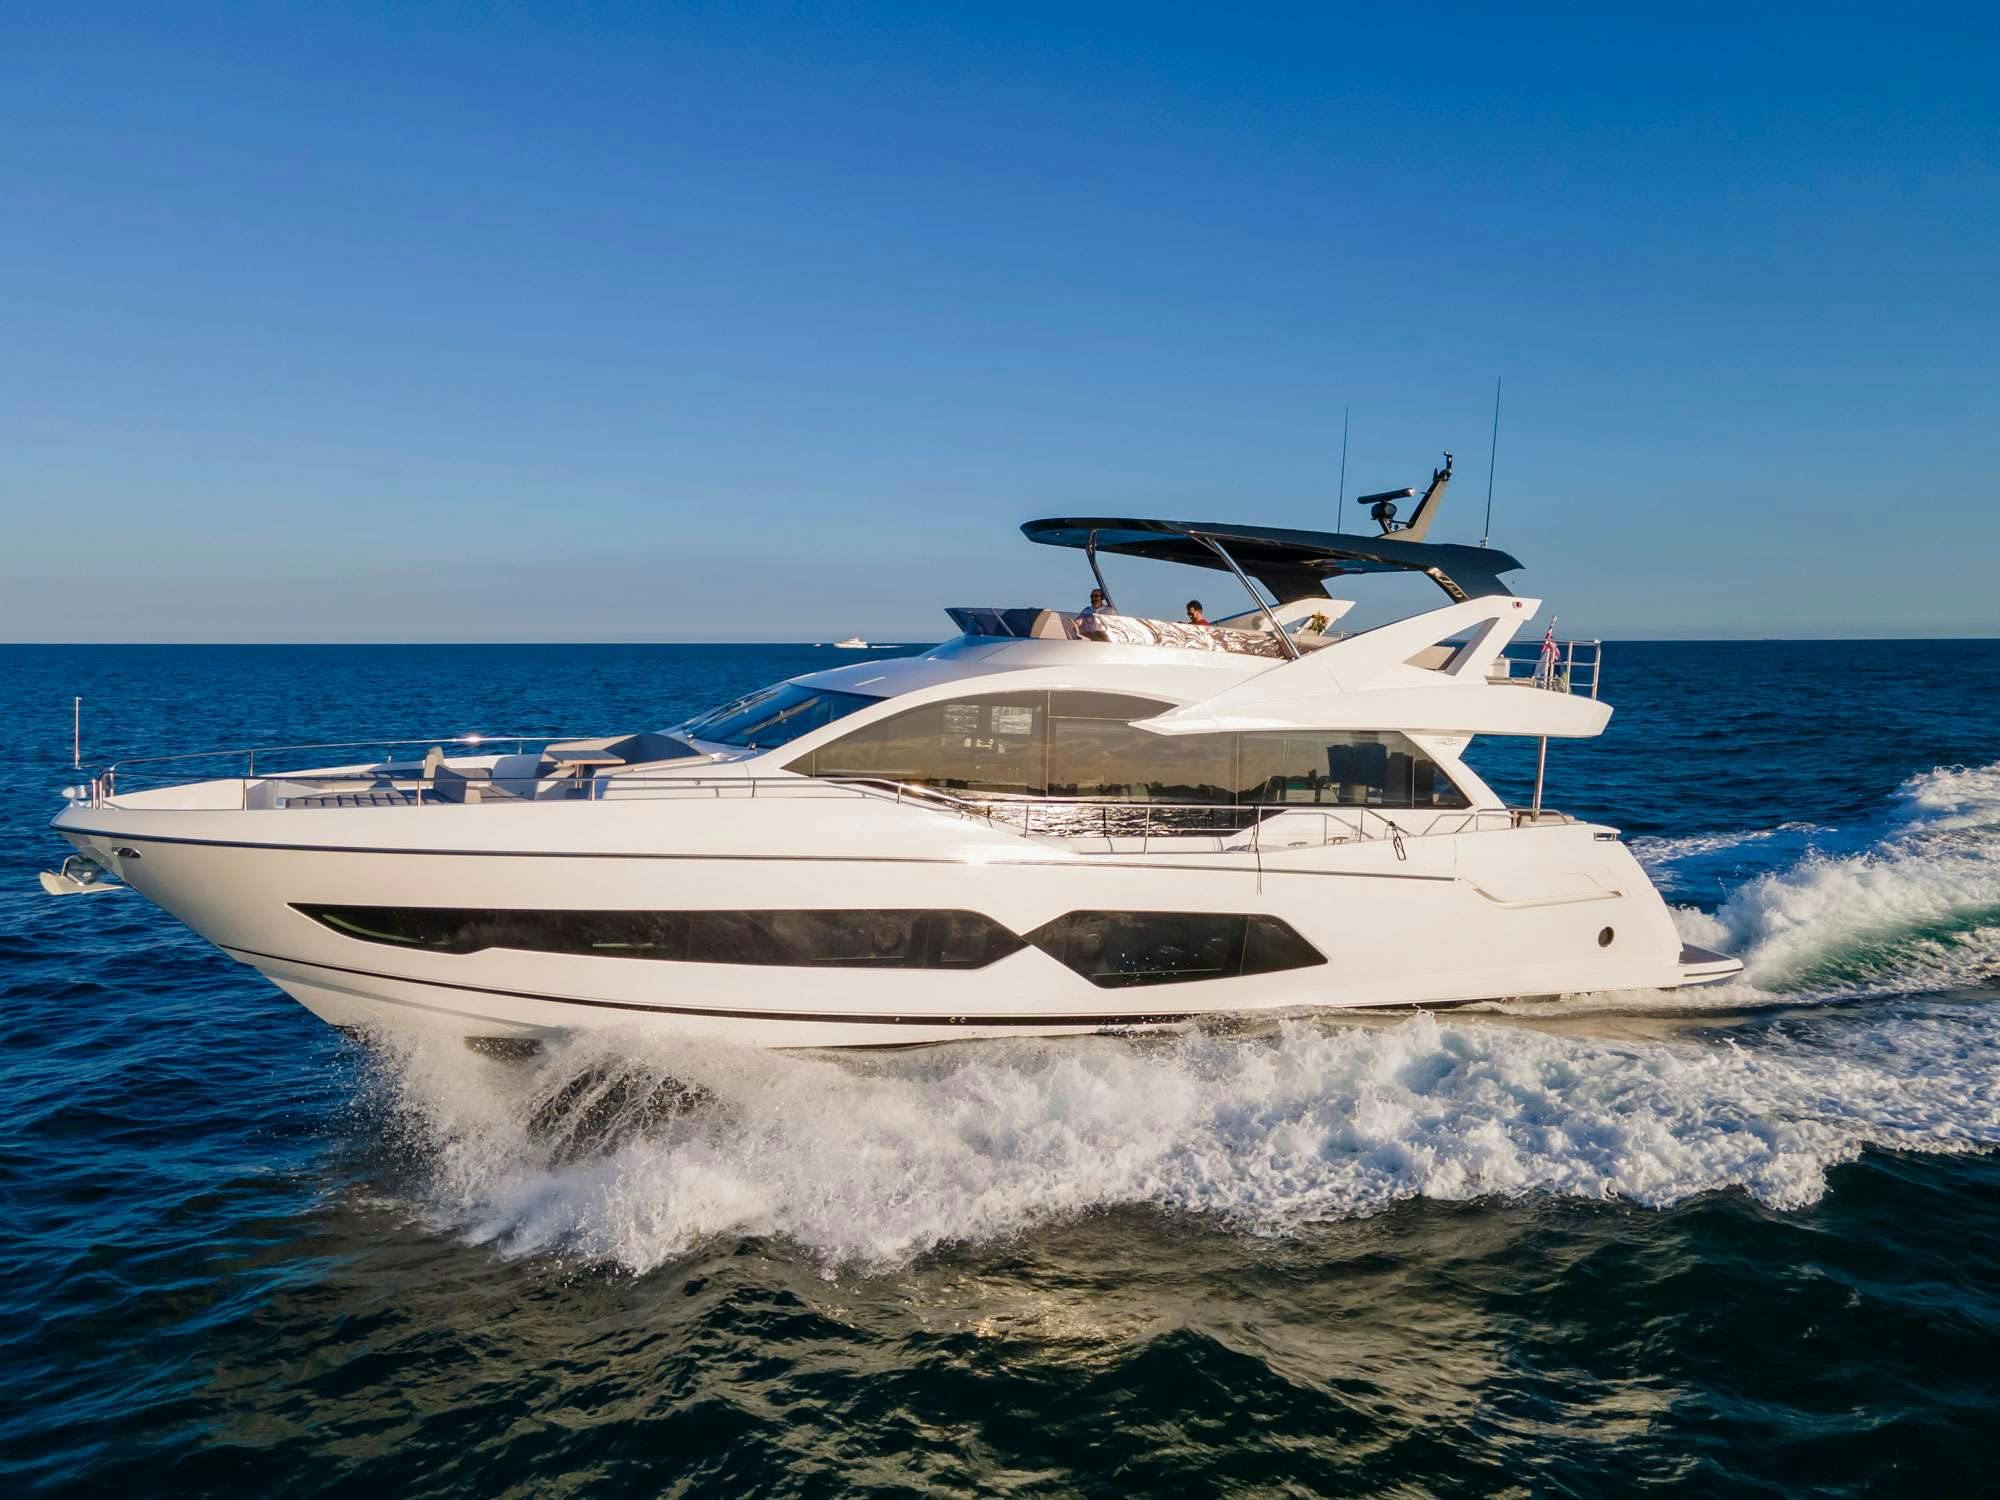 Milamo - Yacht Charter Chesapeake Bay & Boat hire in US East Coast & Bahamas 1